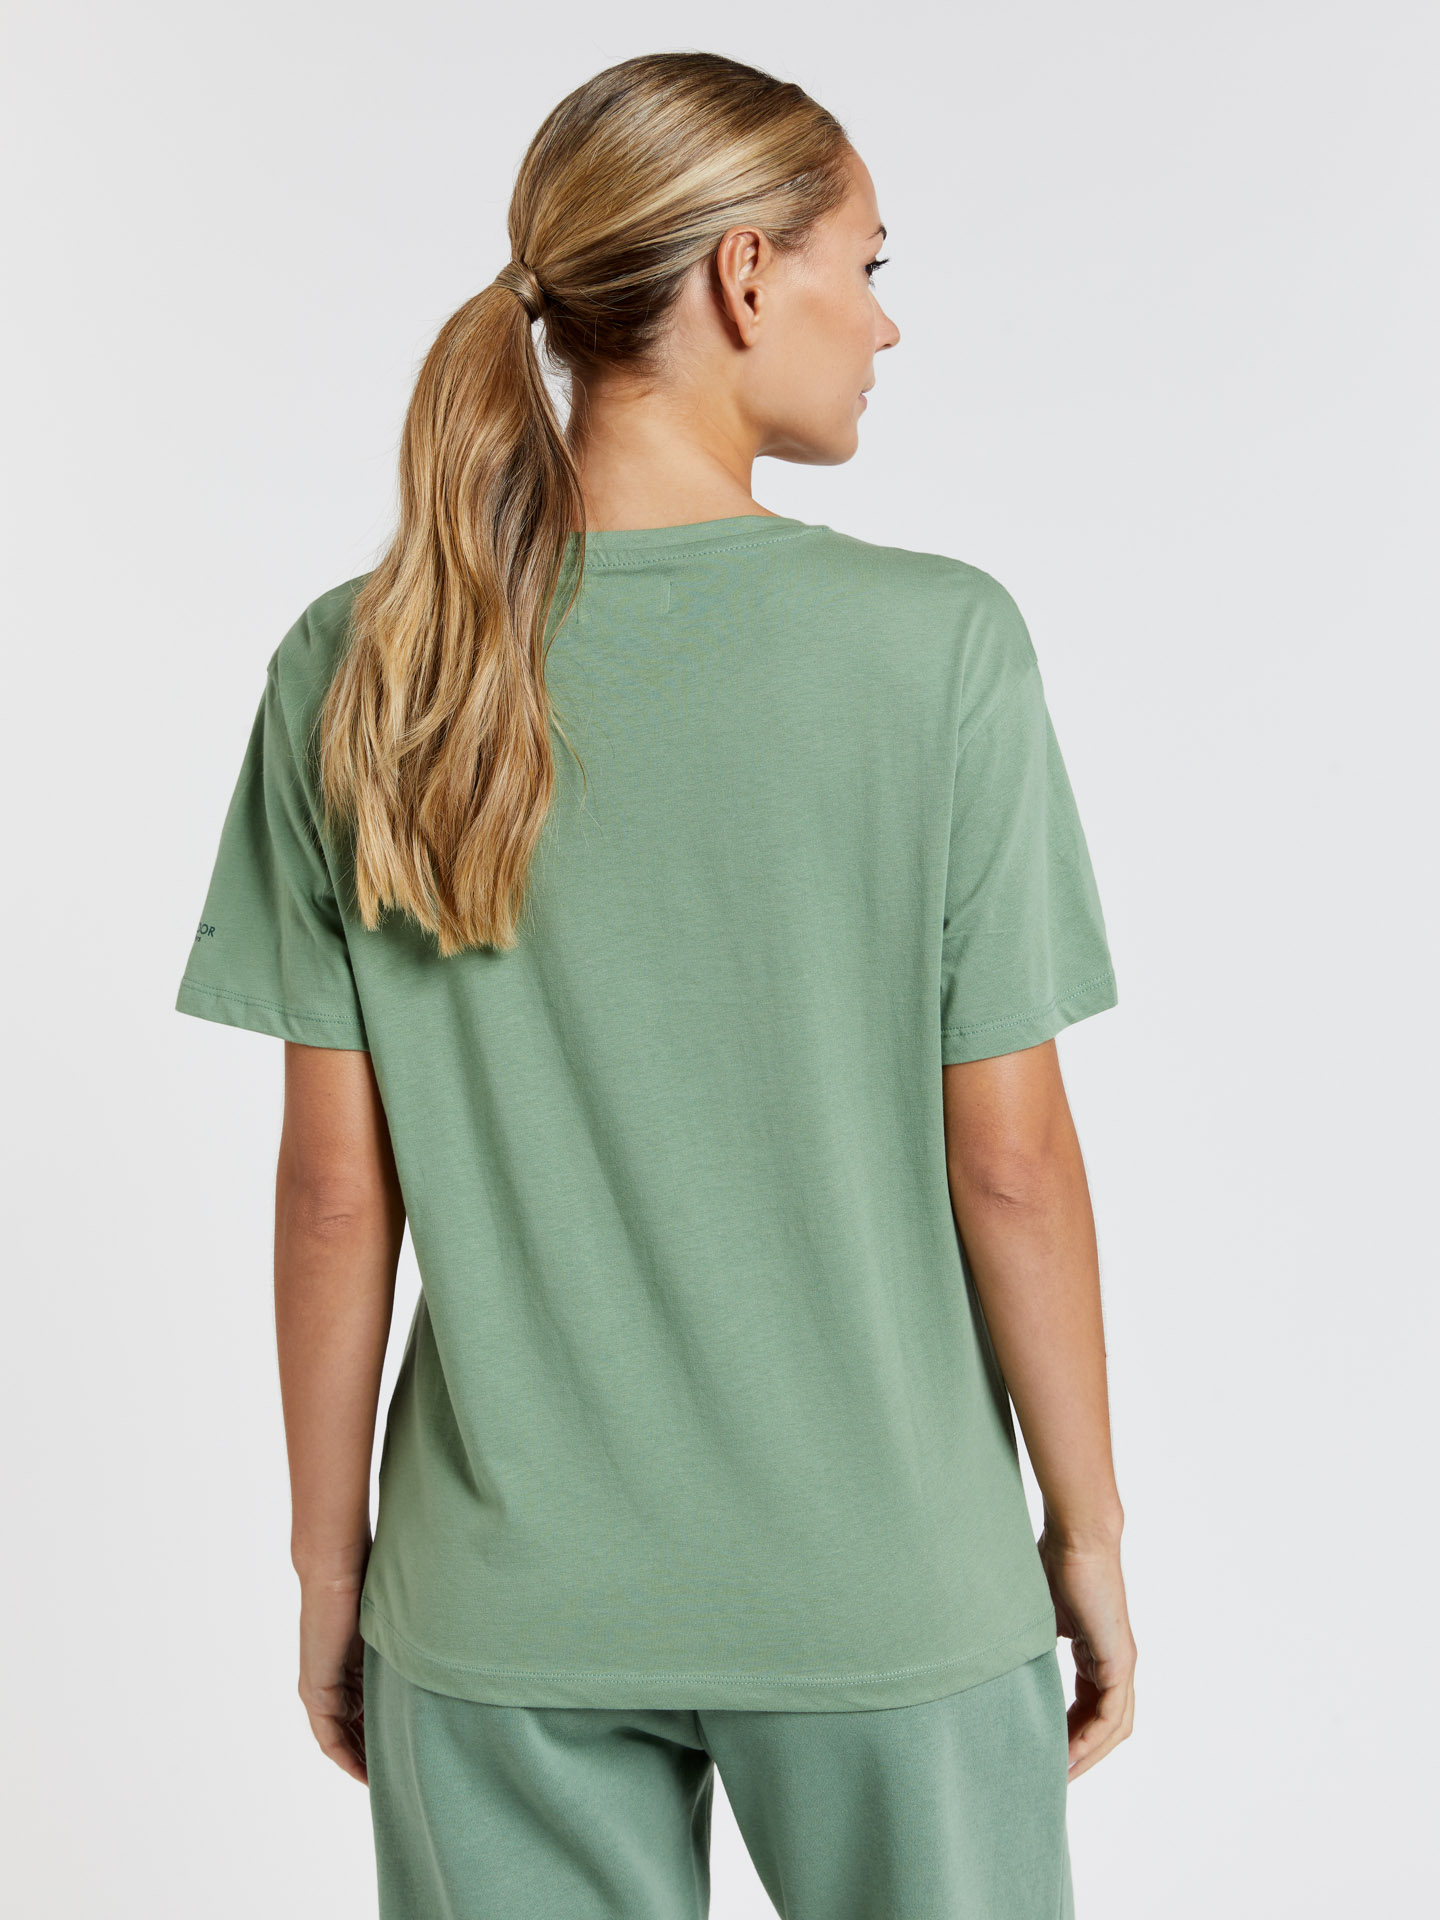 T-Shirt Light Green Sport Woman